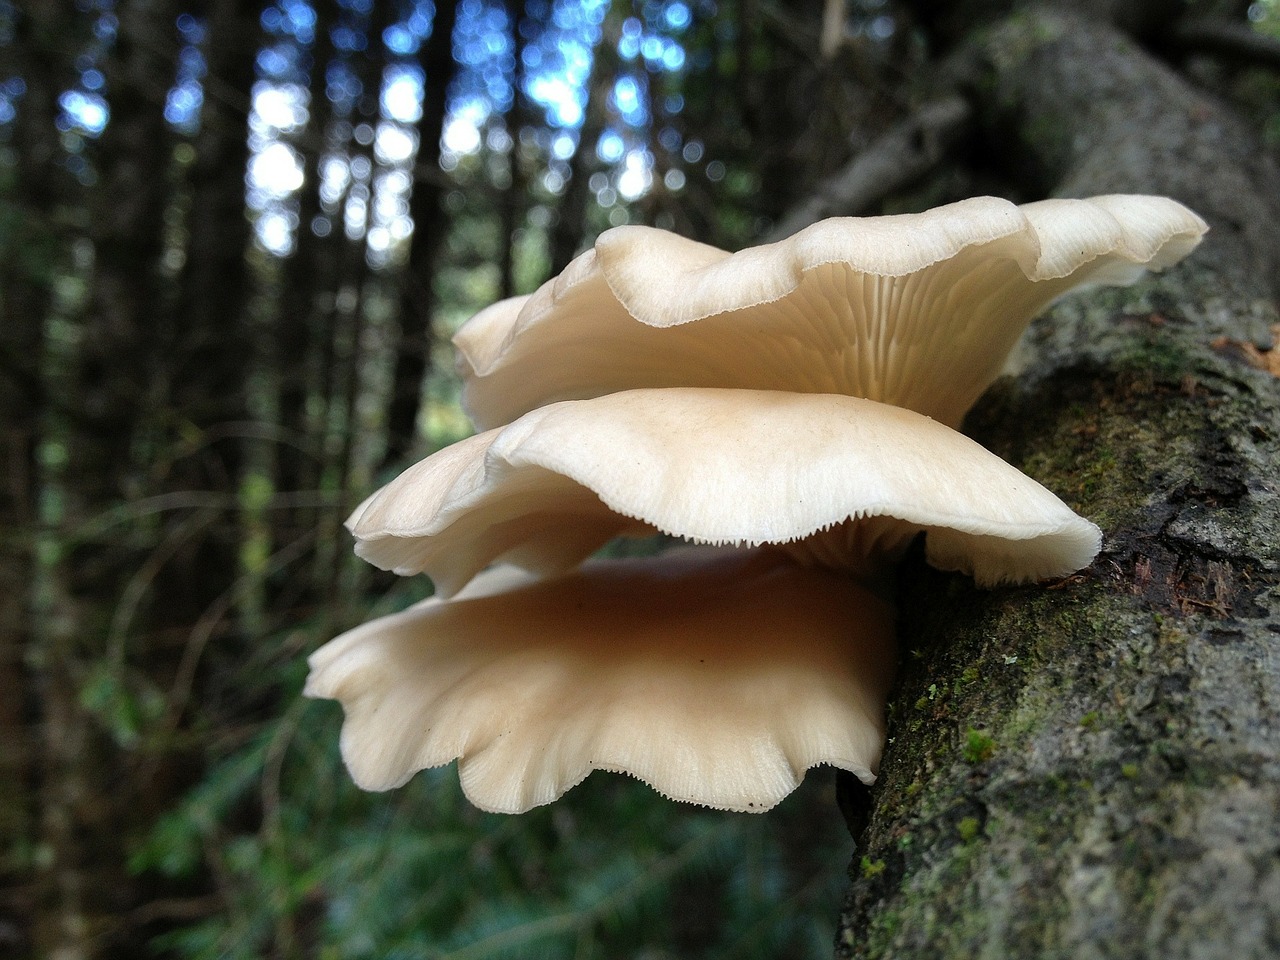 Hliva ústřičná(Zdroj: https://pixabay.com/en/mushrooms-mushroom-tree-trunk-295823/)